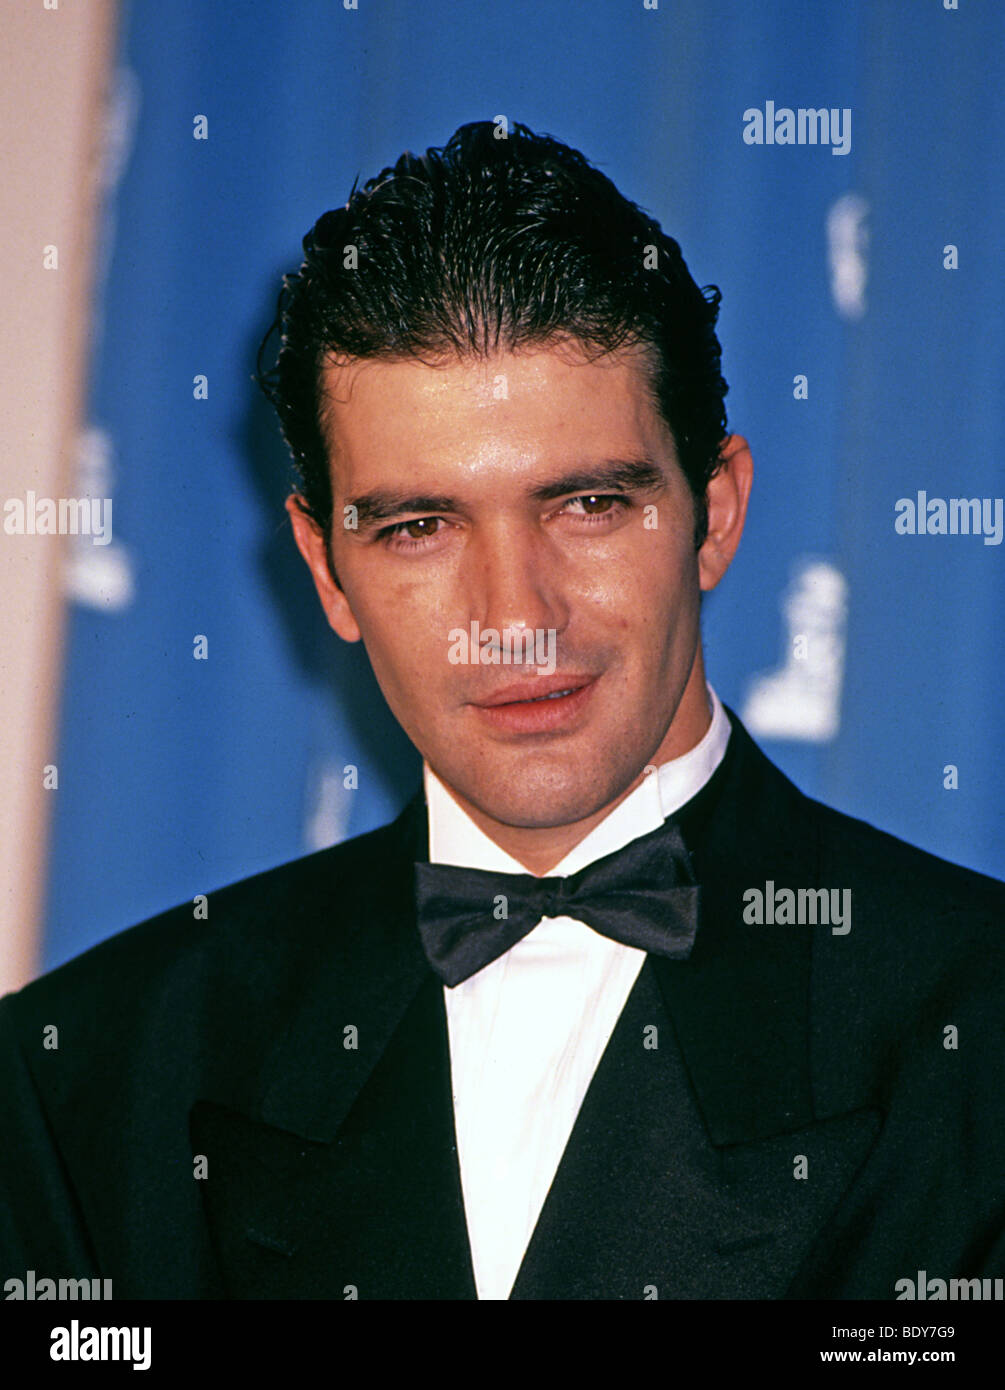 ANTONIO BANDERAS - actor y cantante del cine español en 2006 Foto de stock